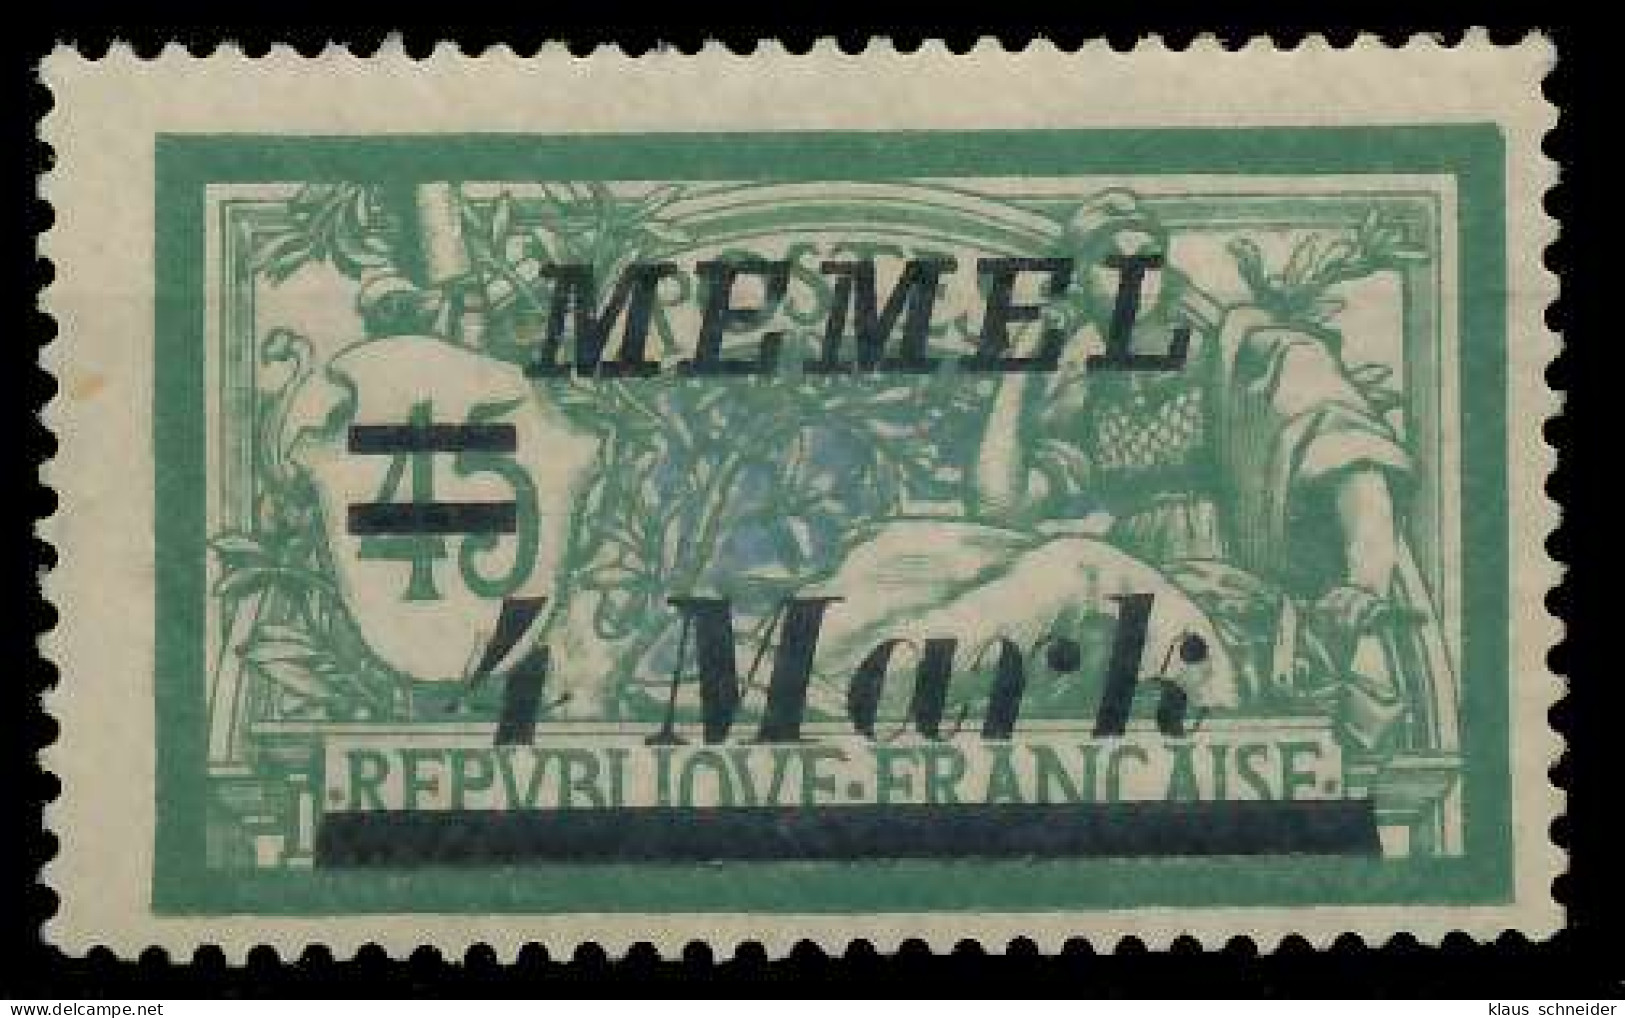 MEMEL 1922 Nr 91IV Postfrisch Gepr. X452FB6 - Memelland 1923